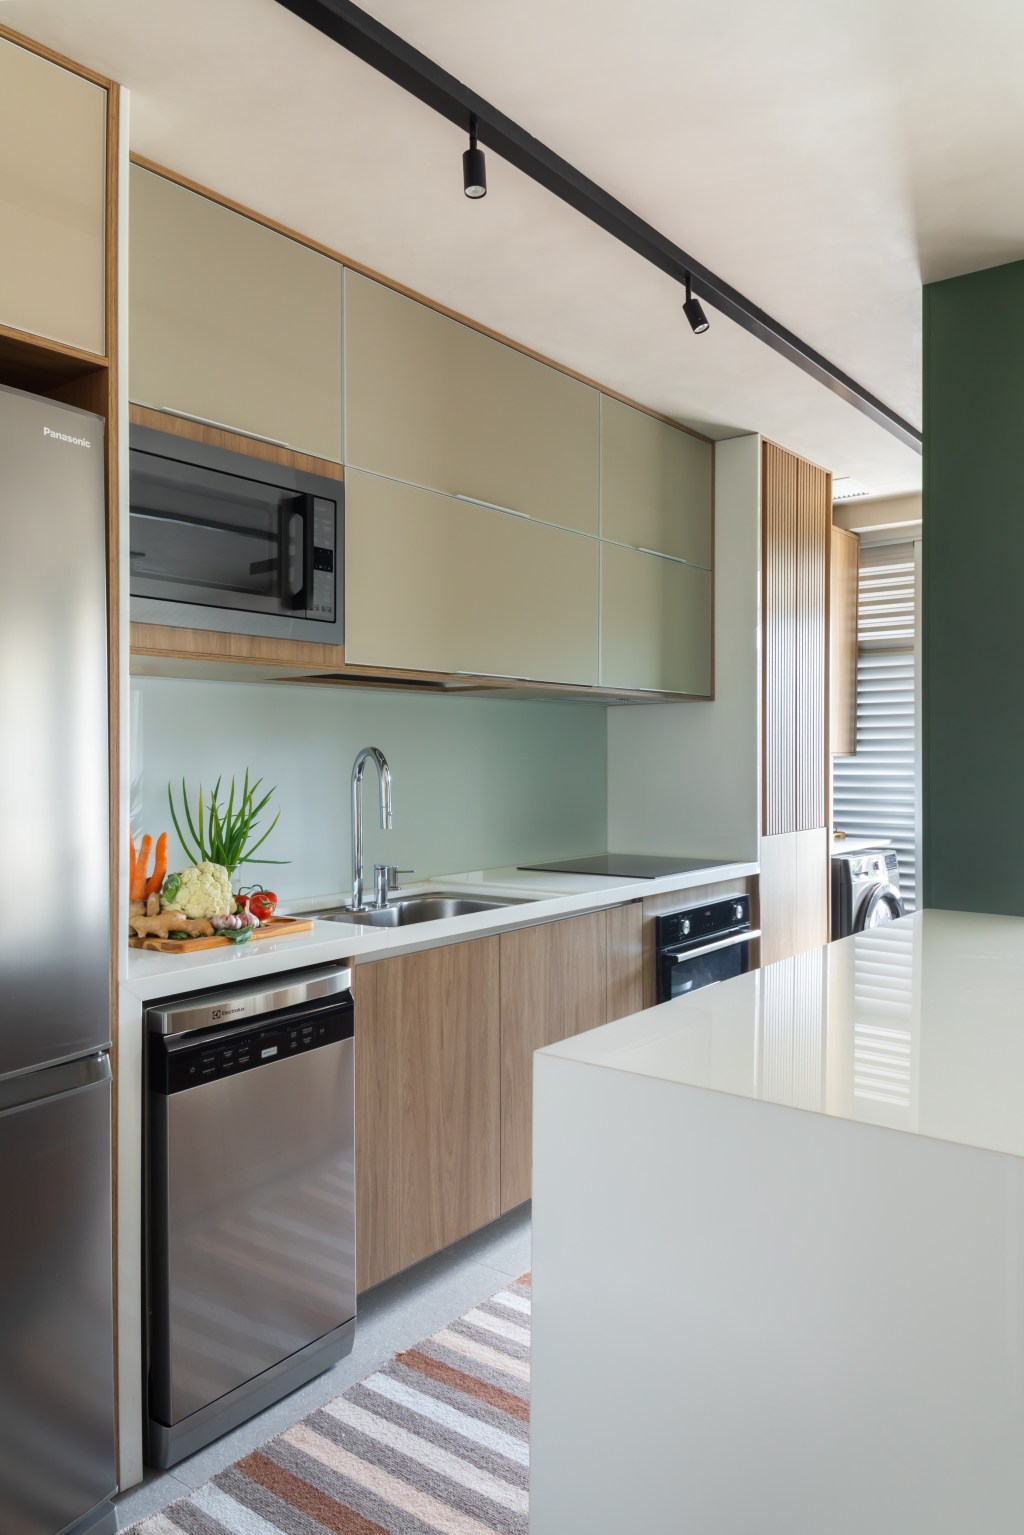 Apê de 82 m² ganha décor japandi com toques contemporâneos. Projeto de Fabiano Ravaglia. Na foto, cozinha americana com parede verde e balcão branco.